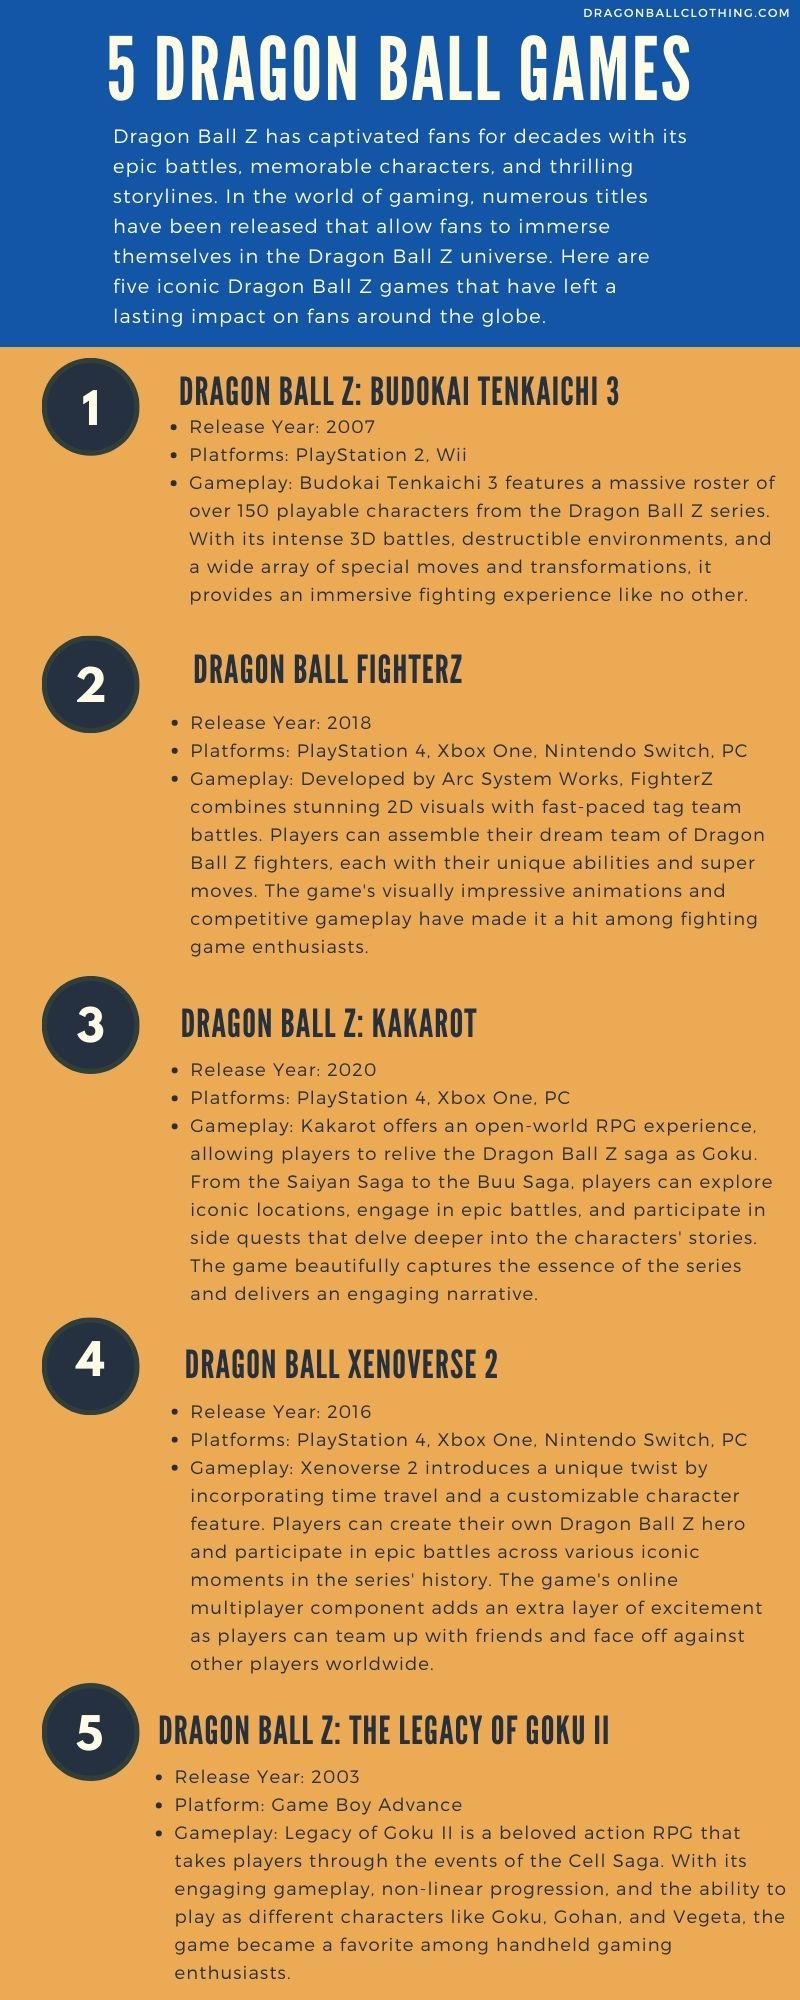 dragon ball z games